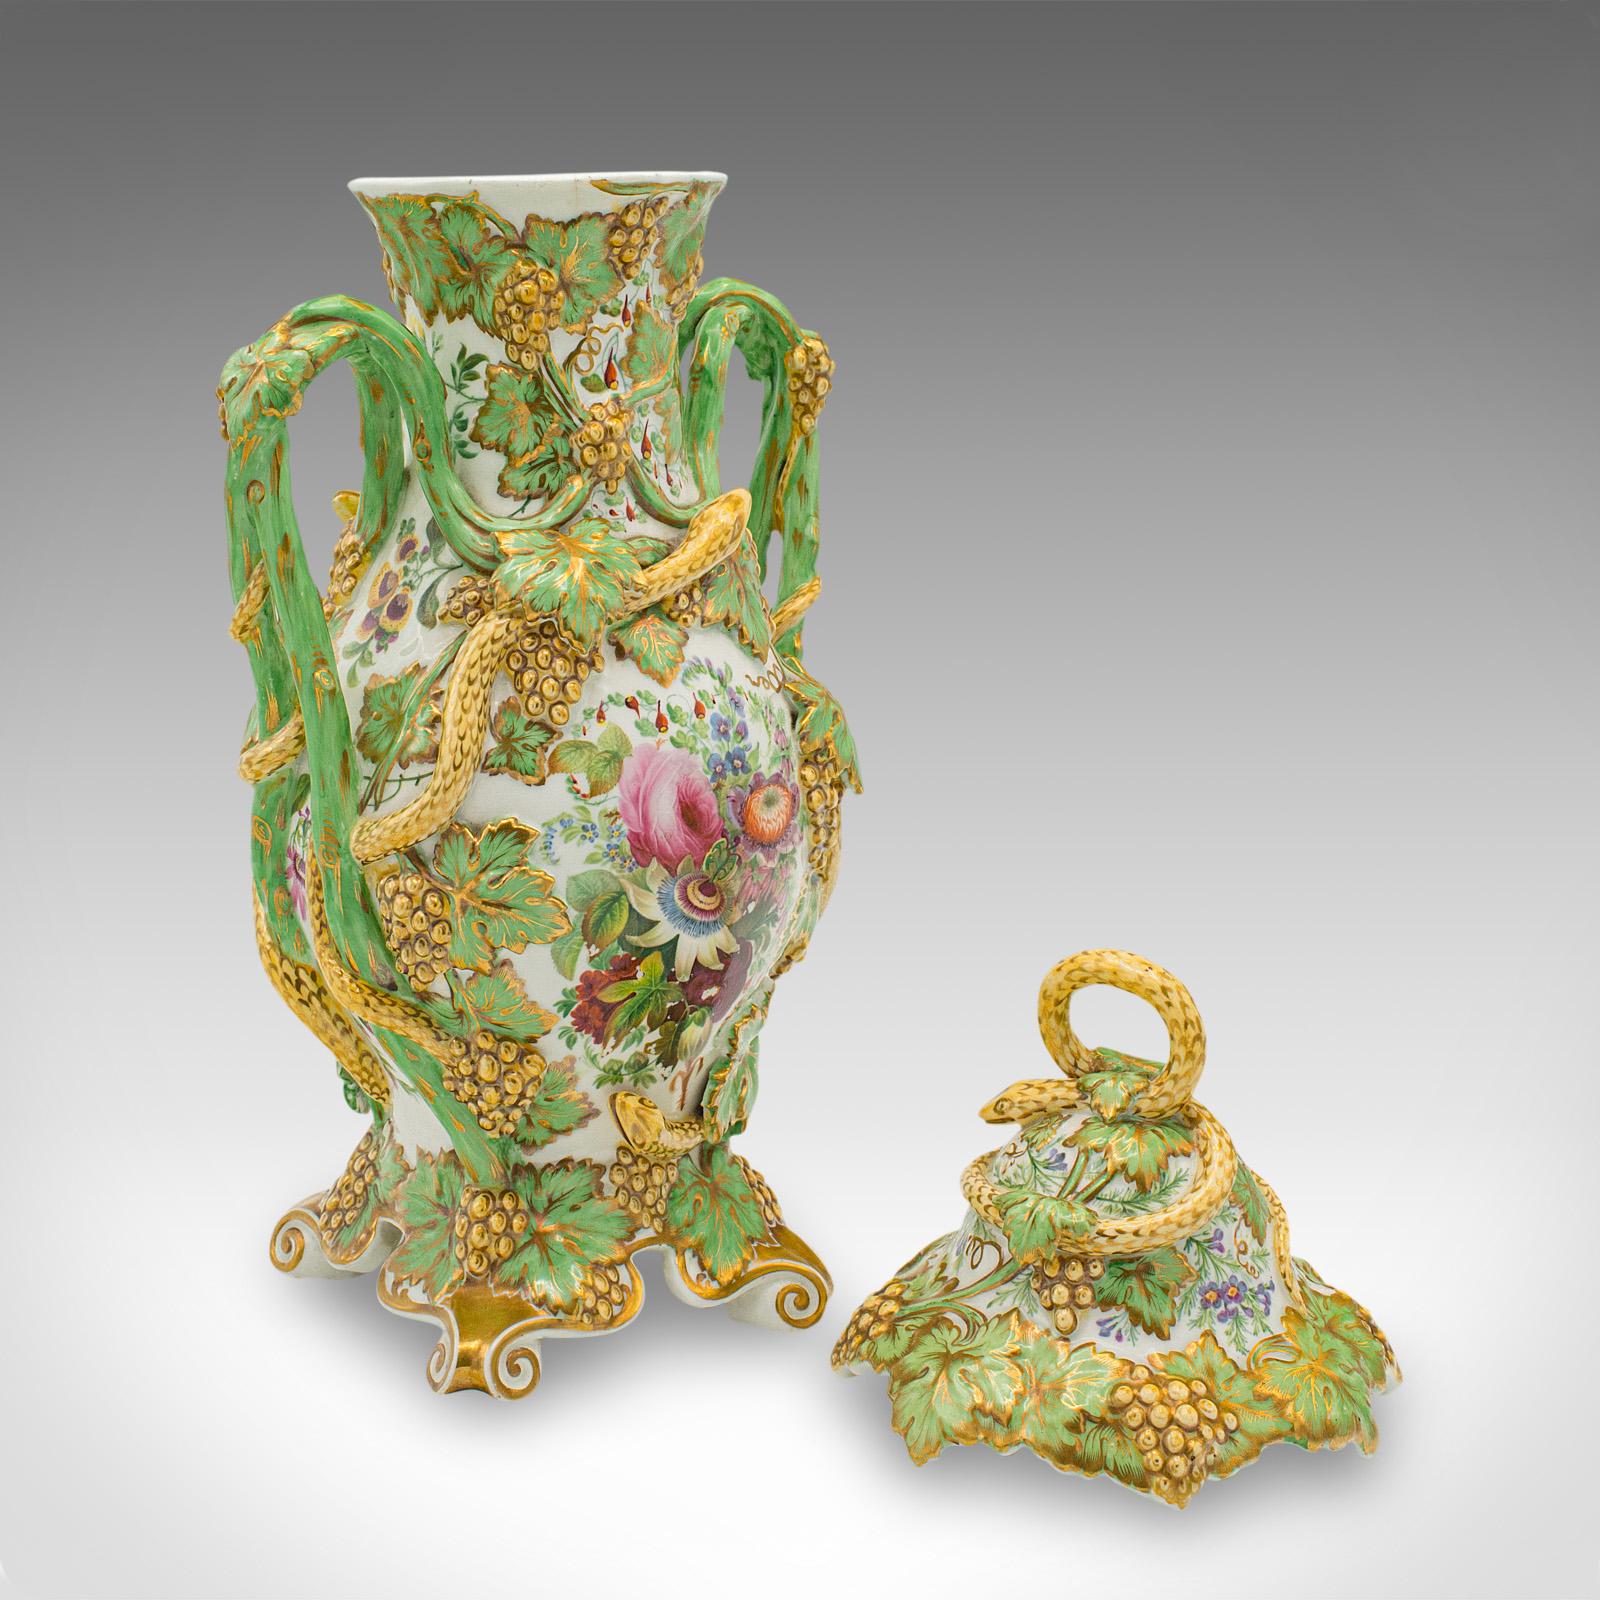 Il s'agit d'un vase décoratif vintage et de son couvercle. Une urne balustre allemande en céramique de style Art déco, datant du milieu du 20e siècle, vers 1940.

Des serpents fascinants et de belles couleurs pour ce charmant vase.
Présente une